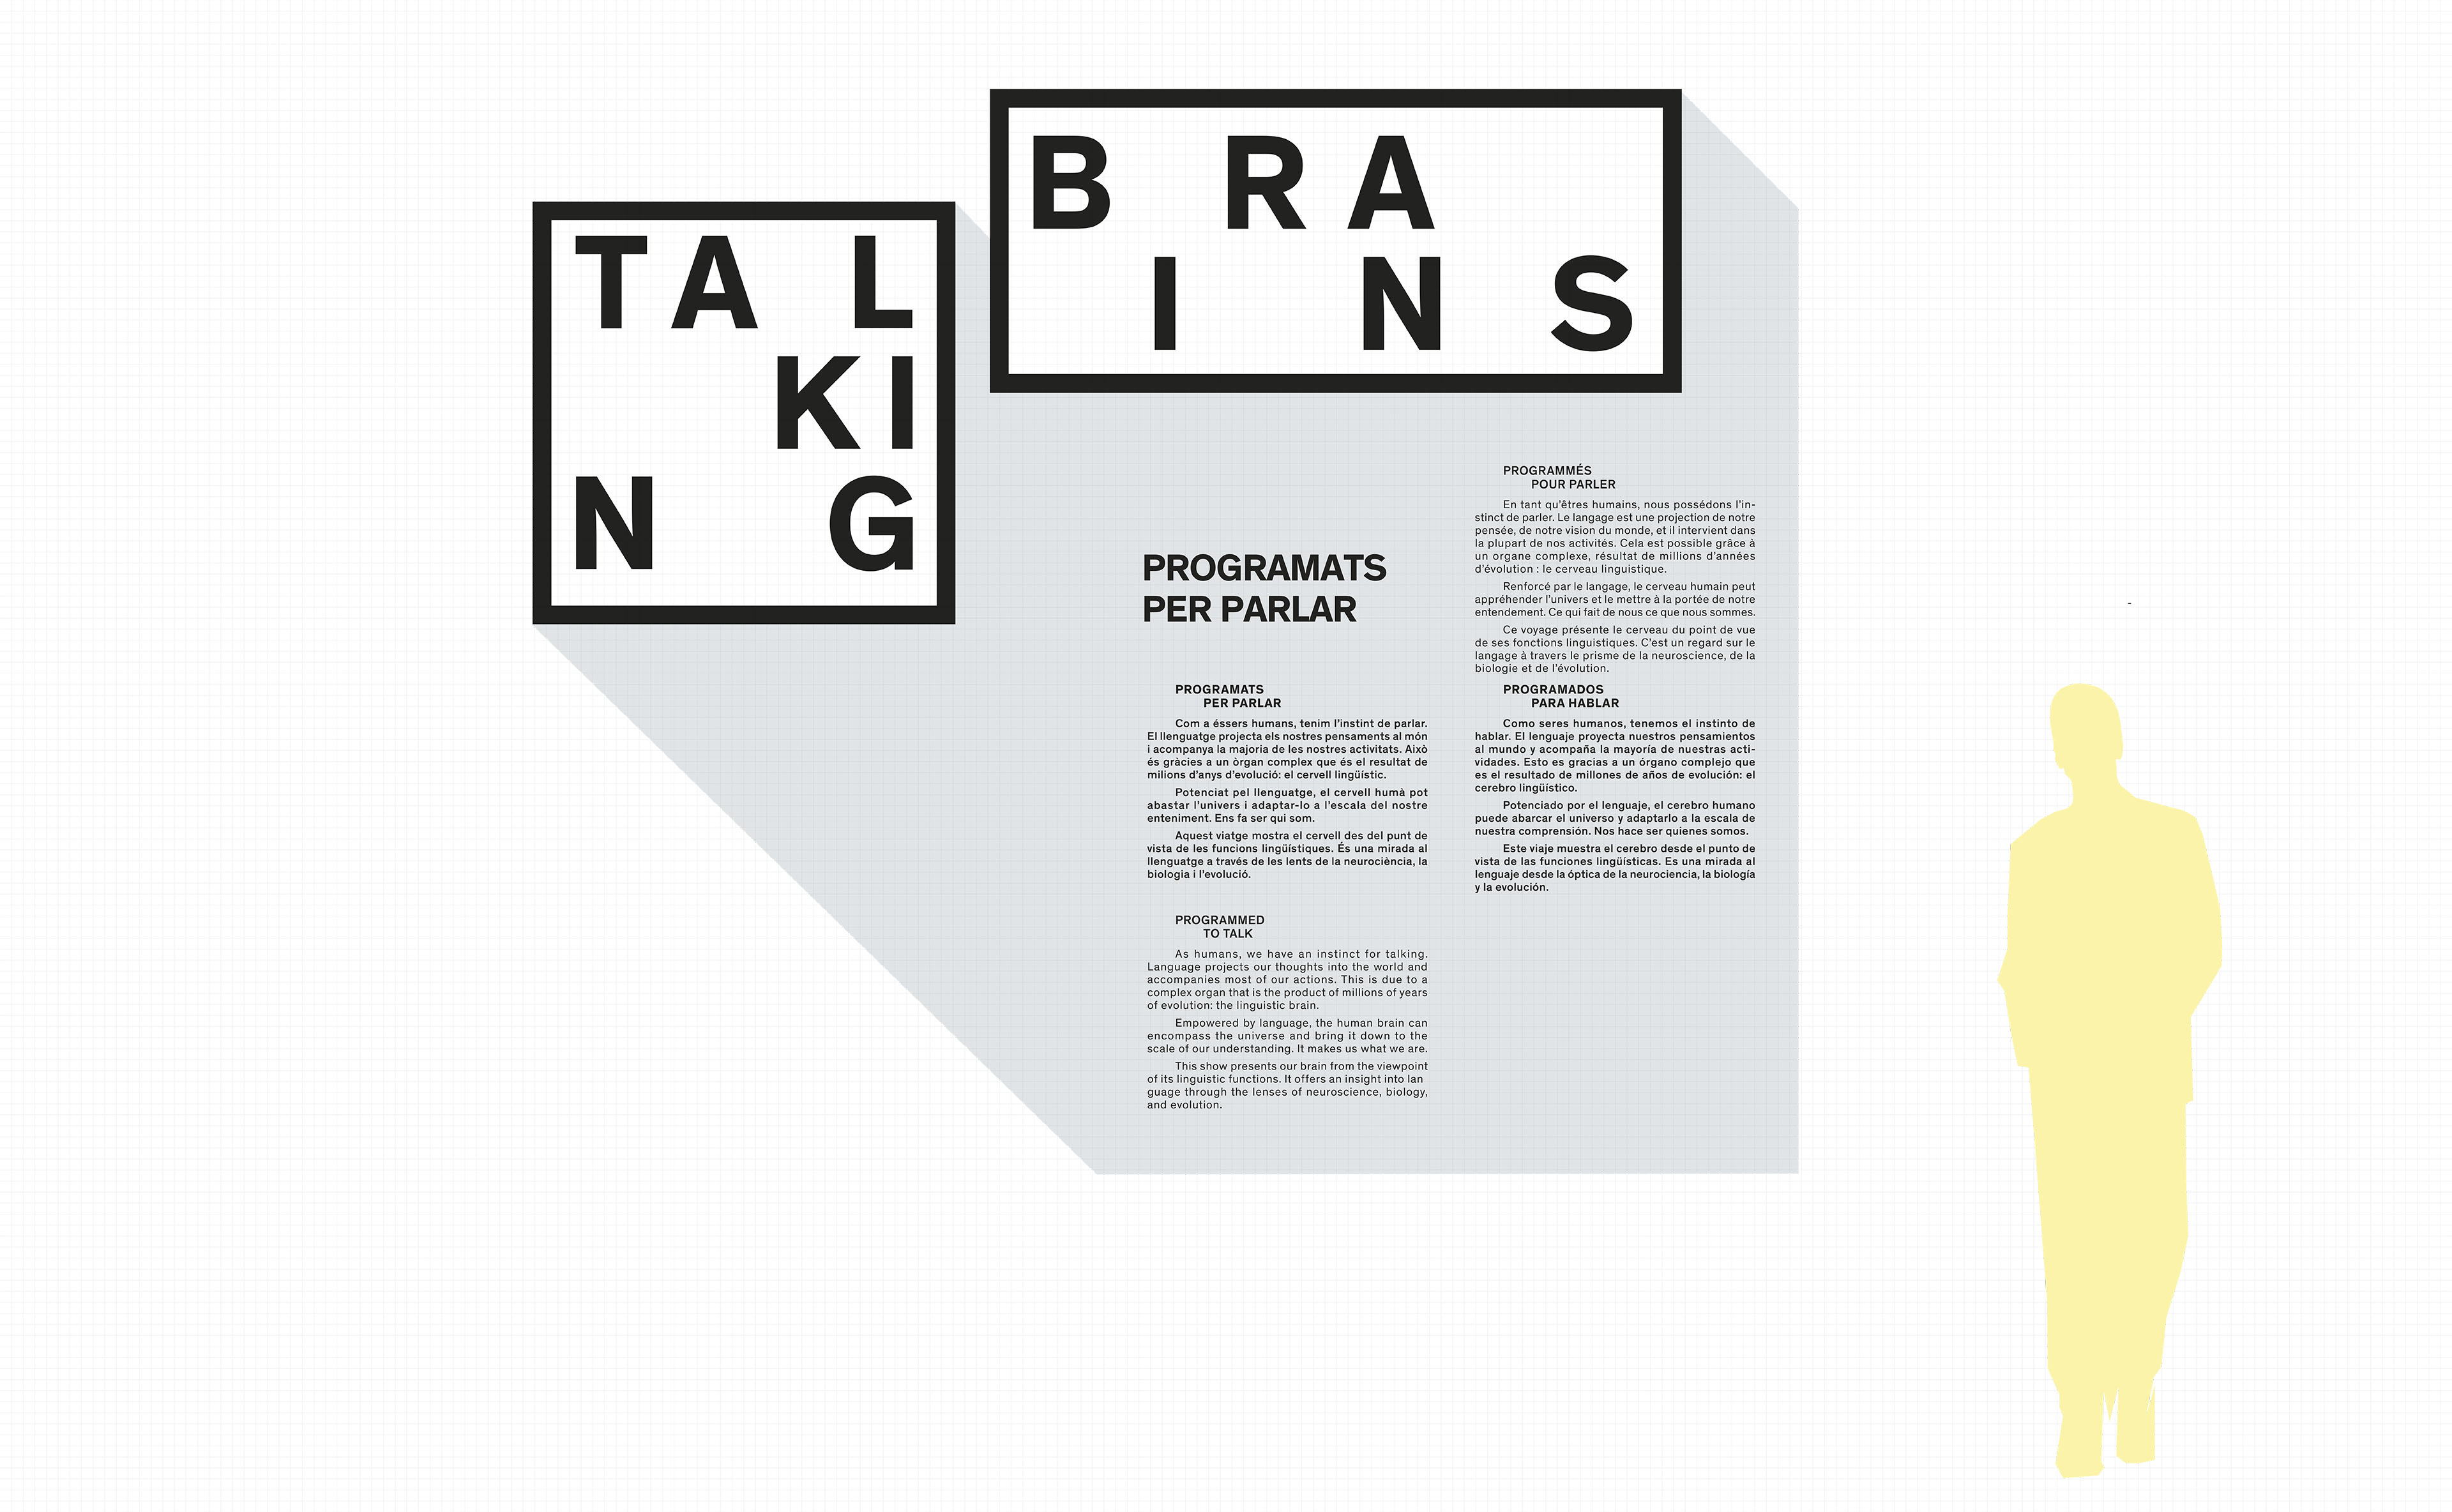 interactive-exhibition-talking-brains-cosmocaixa-barcelona-spain-image-3